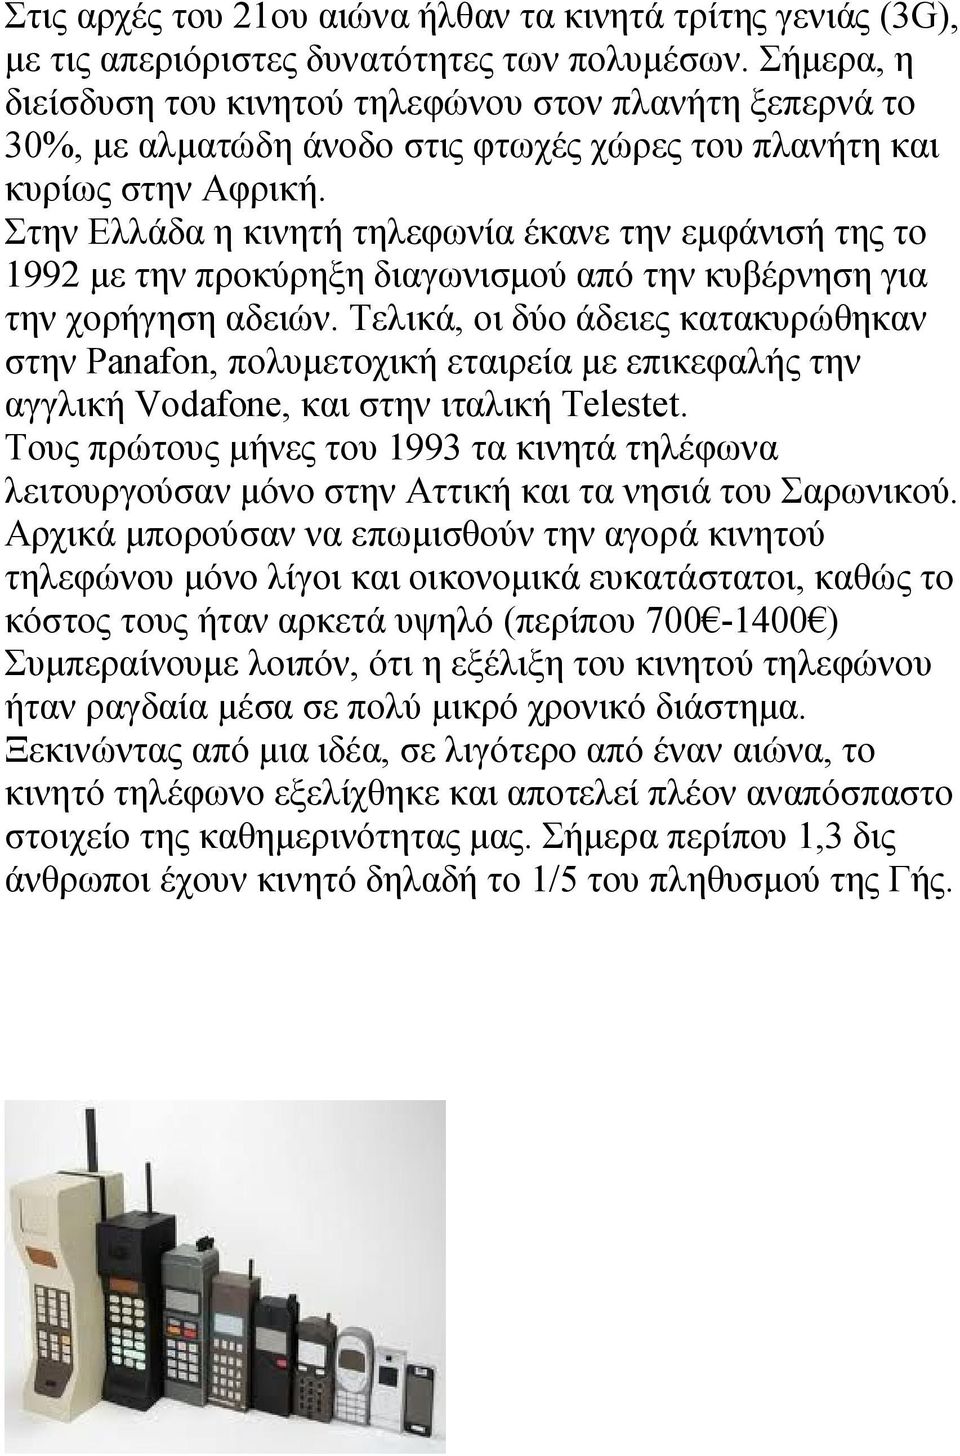 Στην Ελλάδα η κινητή τηλεφωνία έκανε την εμφάνισή της το 1992 με την προκύρηξη διαγωνισμού από την κυβέρνηση για την χορήγηση αδειών.